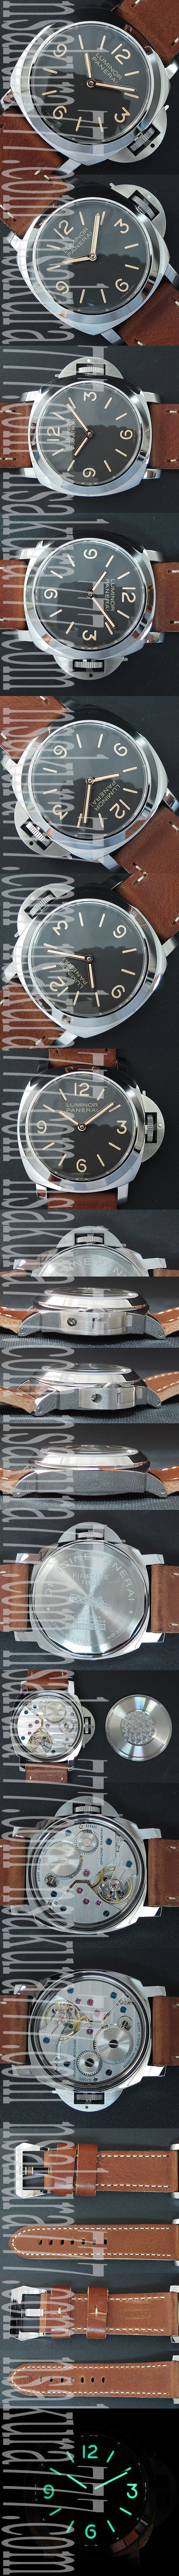 パネライ ルミノール マリーナ PAM390 メンズ腕時計